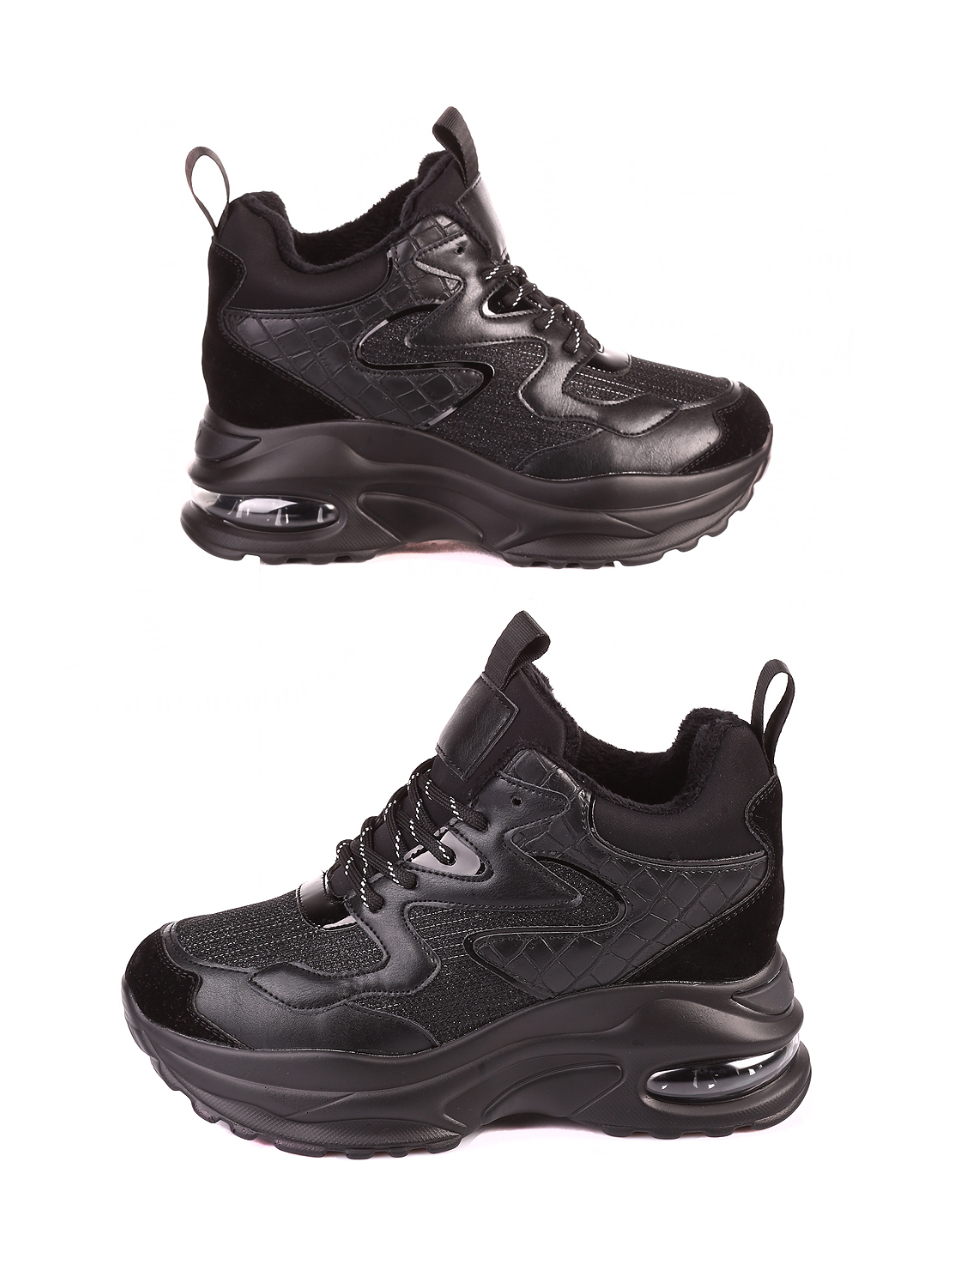 Ежедневни дамски обувки в черно 3U-20706 black